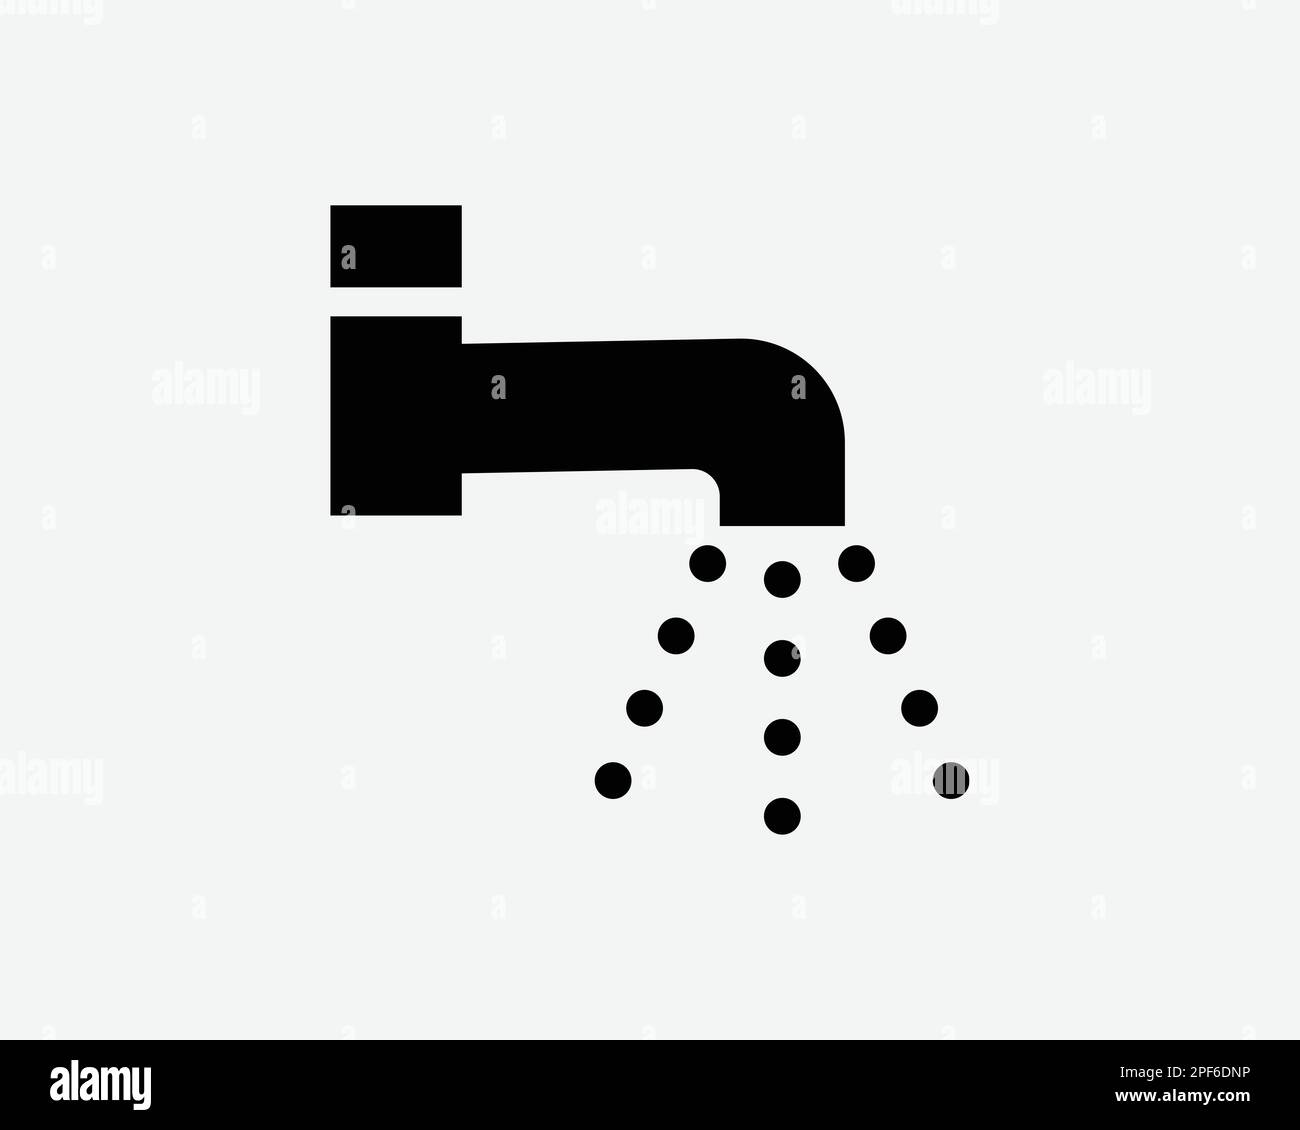 Rubinetto acqua icona tubo rubinetto bagno Spray bagno bagno bagno cucina Nero Bianco Silhouette simbolo segno grafico clipart Illustrazione pittogramma vettore Illustrazione Vettoriale